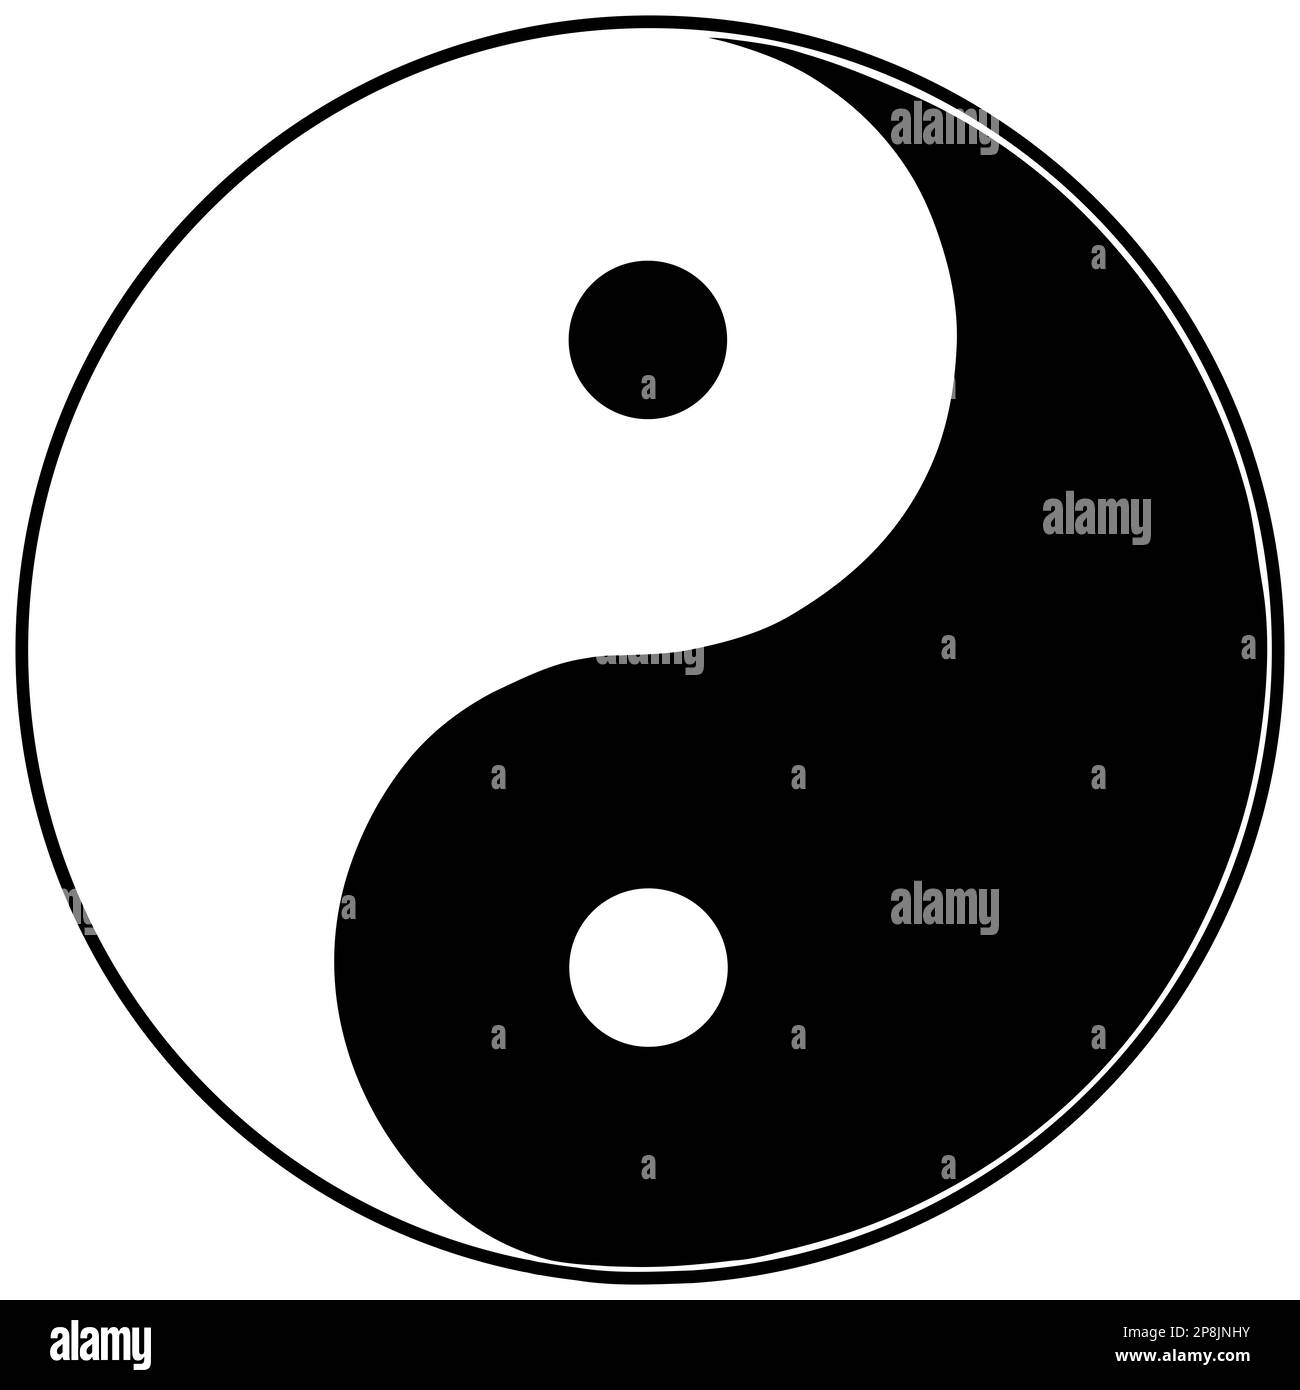 Yin and yang symbol Stock Photo